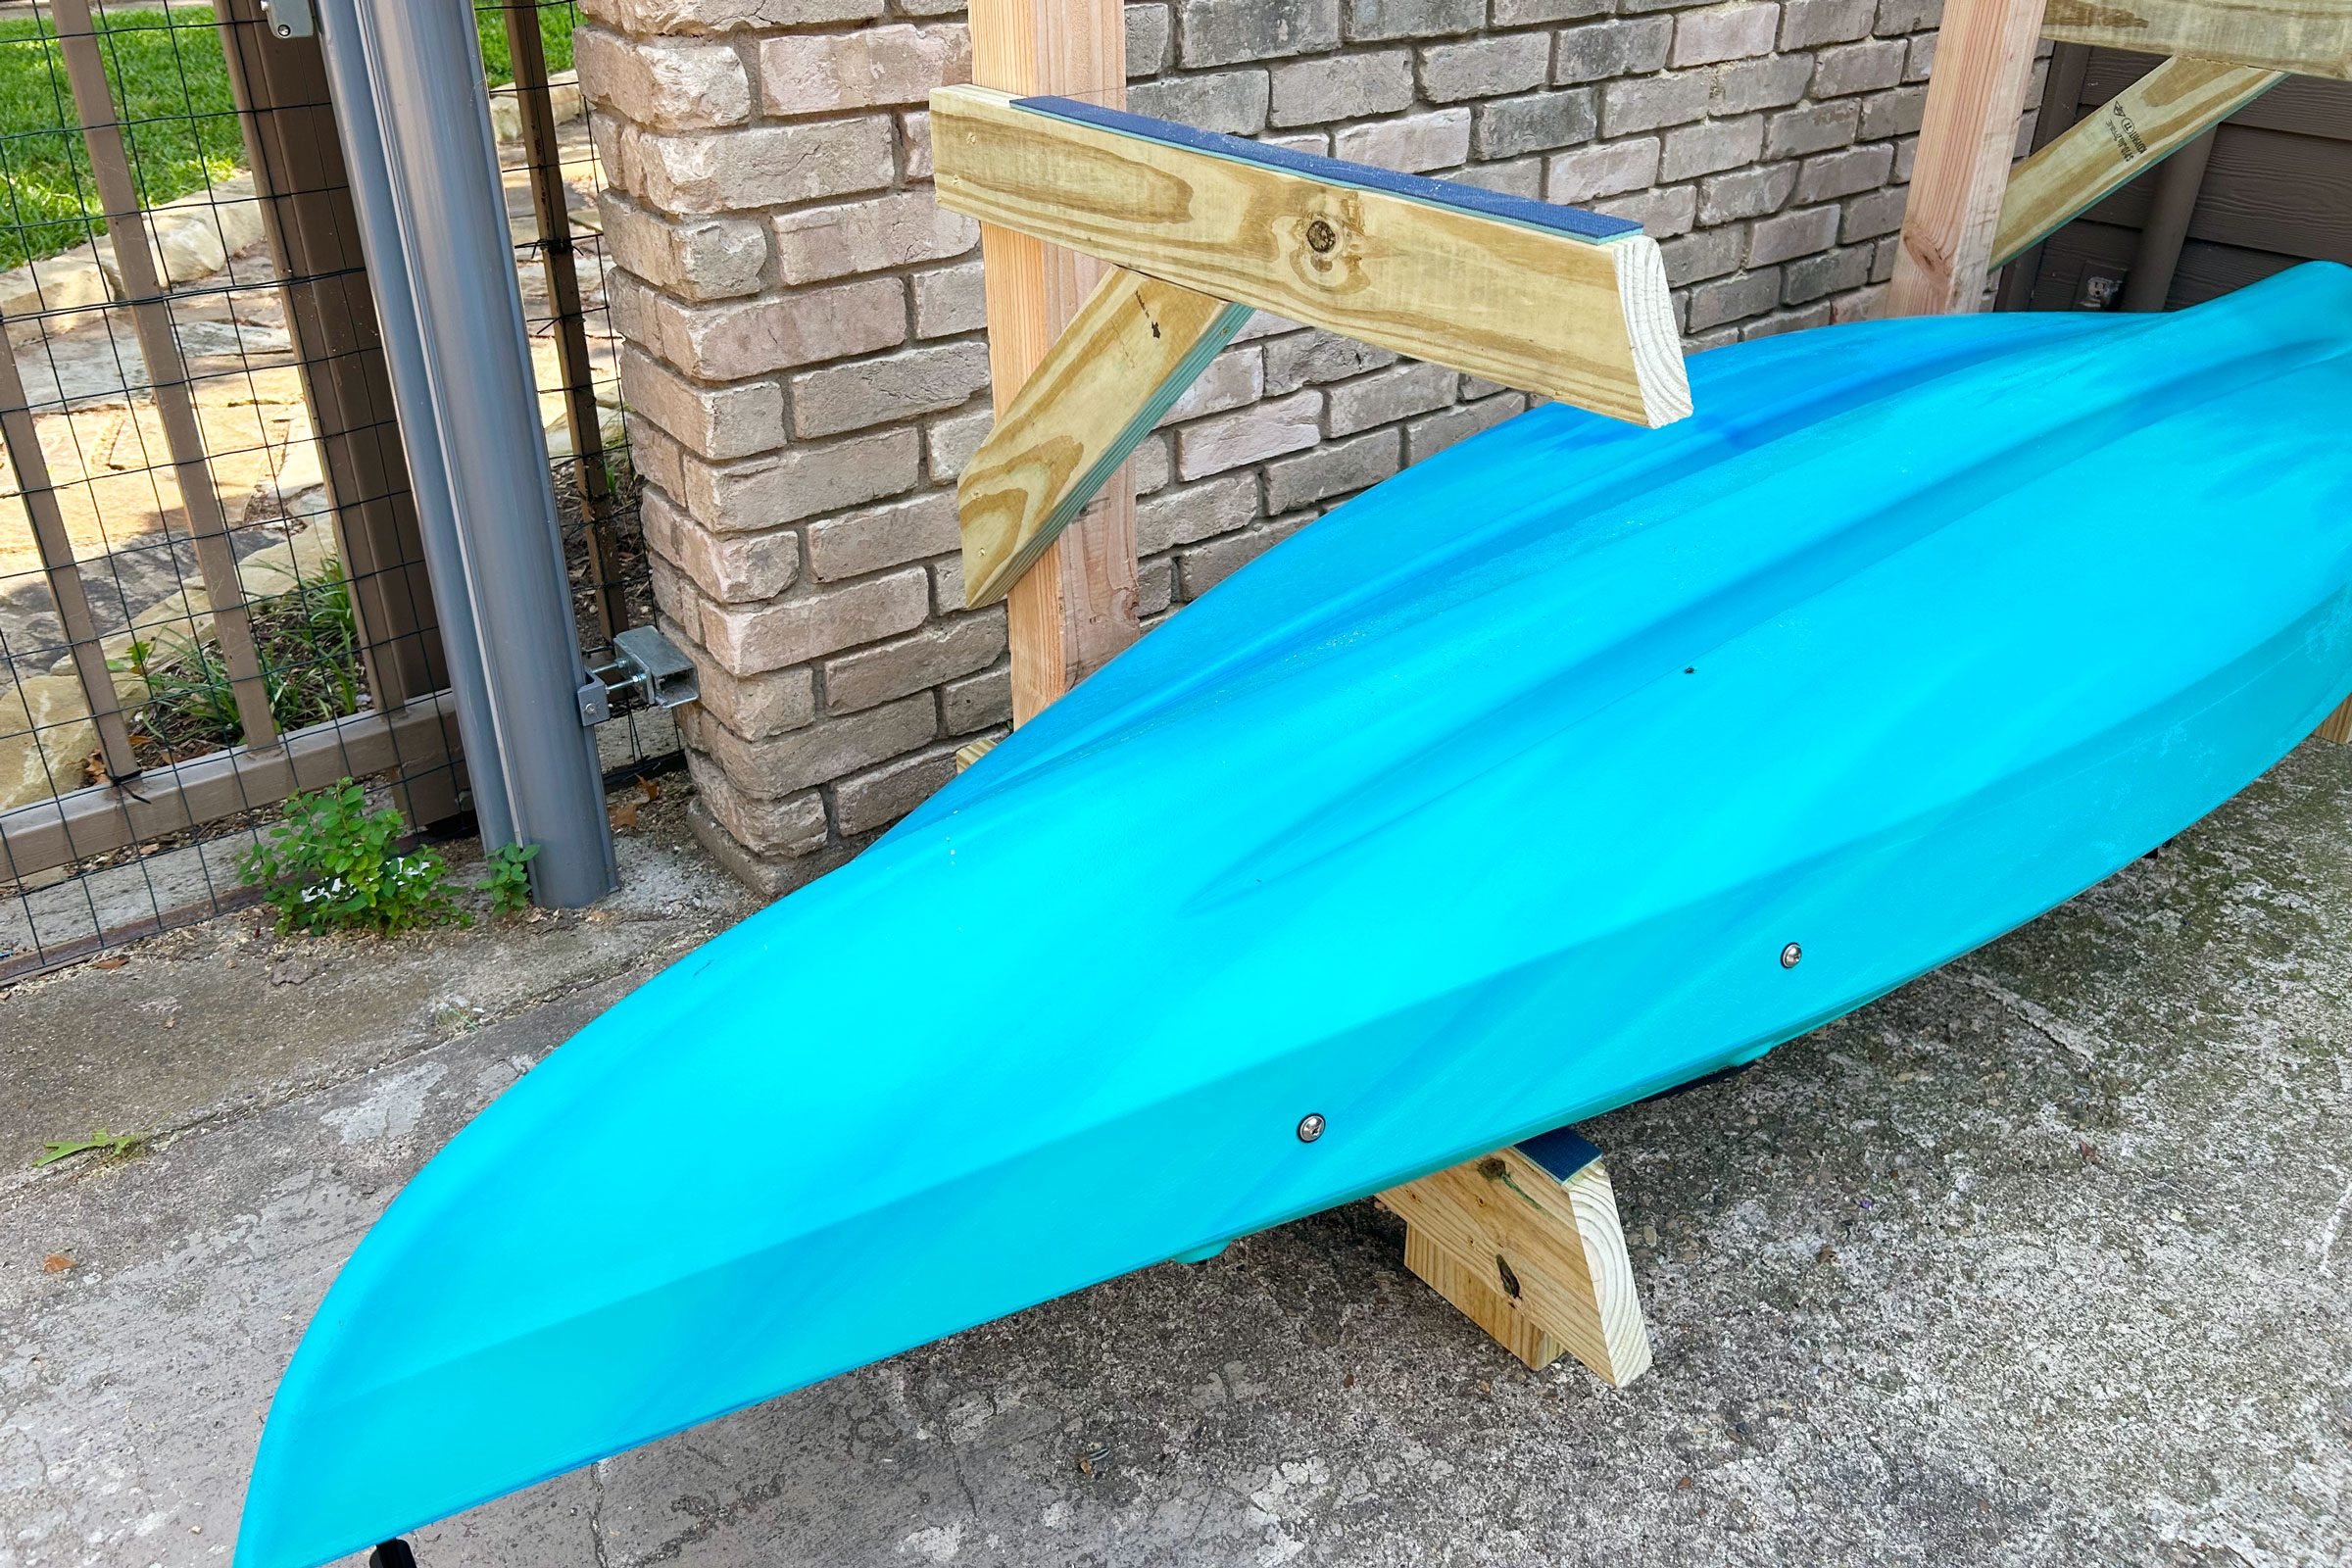 How to Make a DIY Kayak Rack